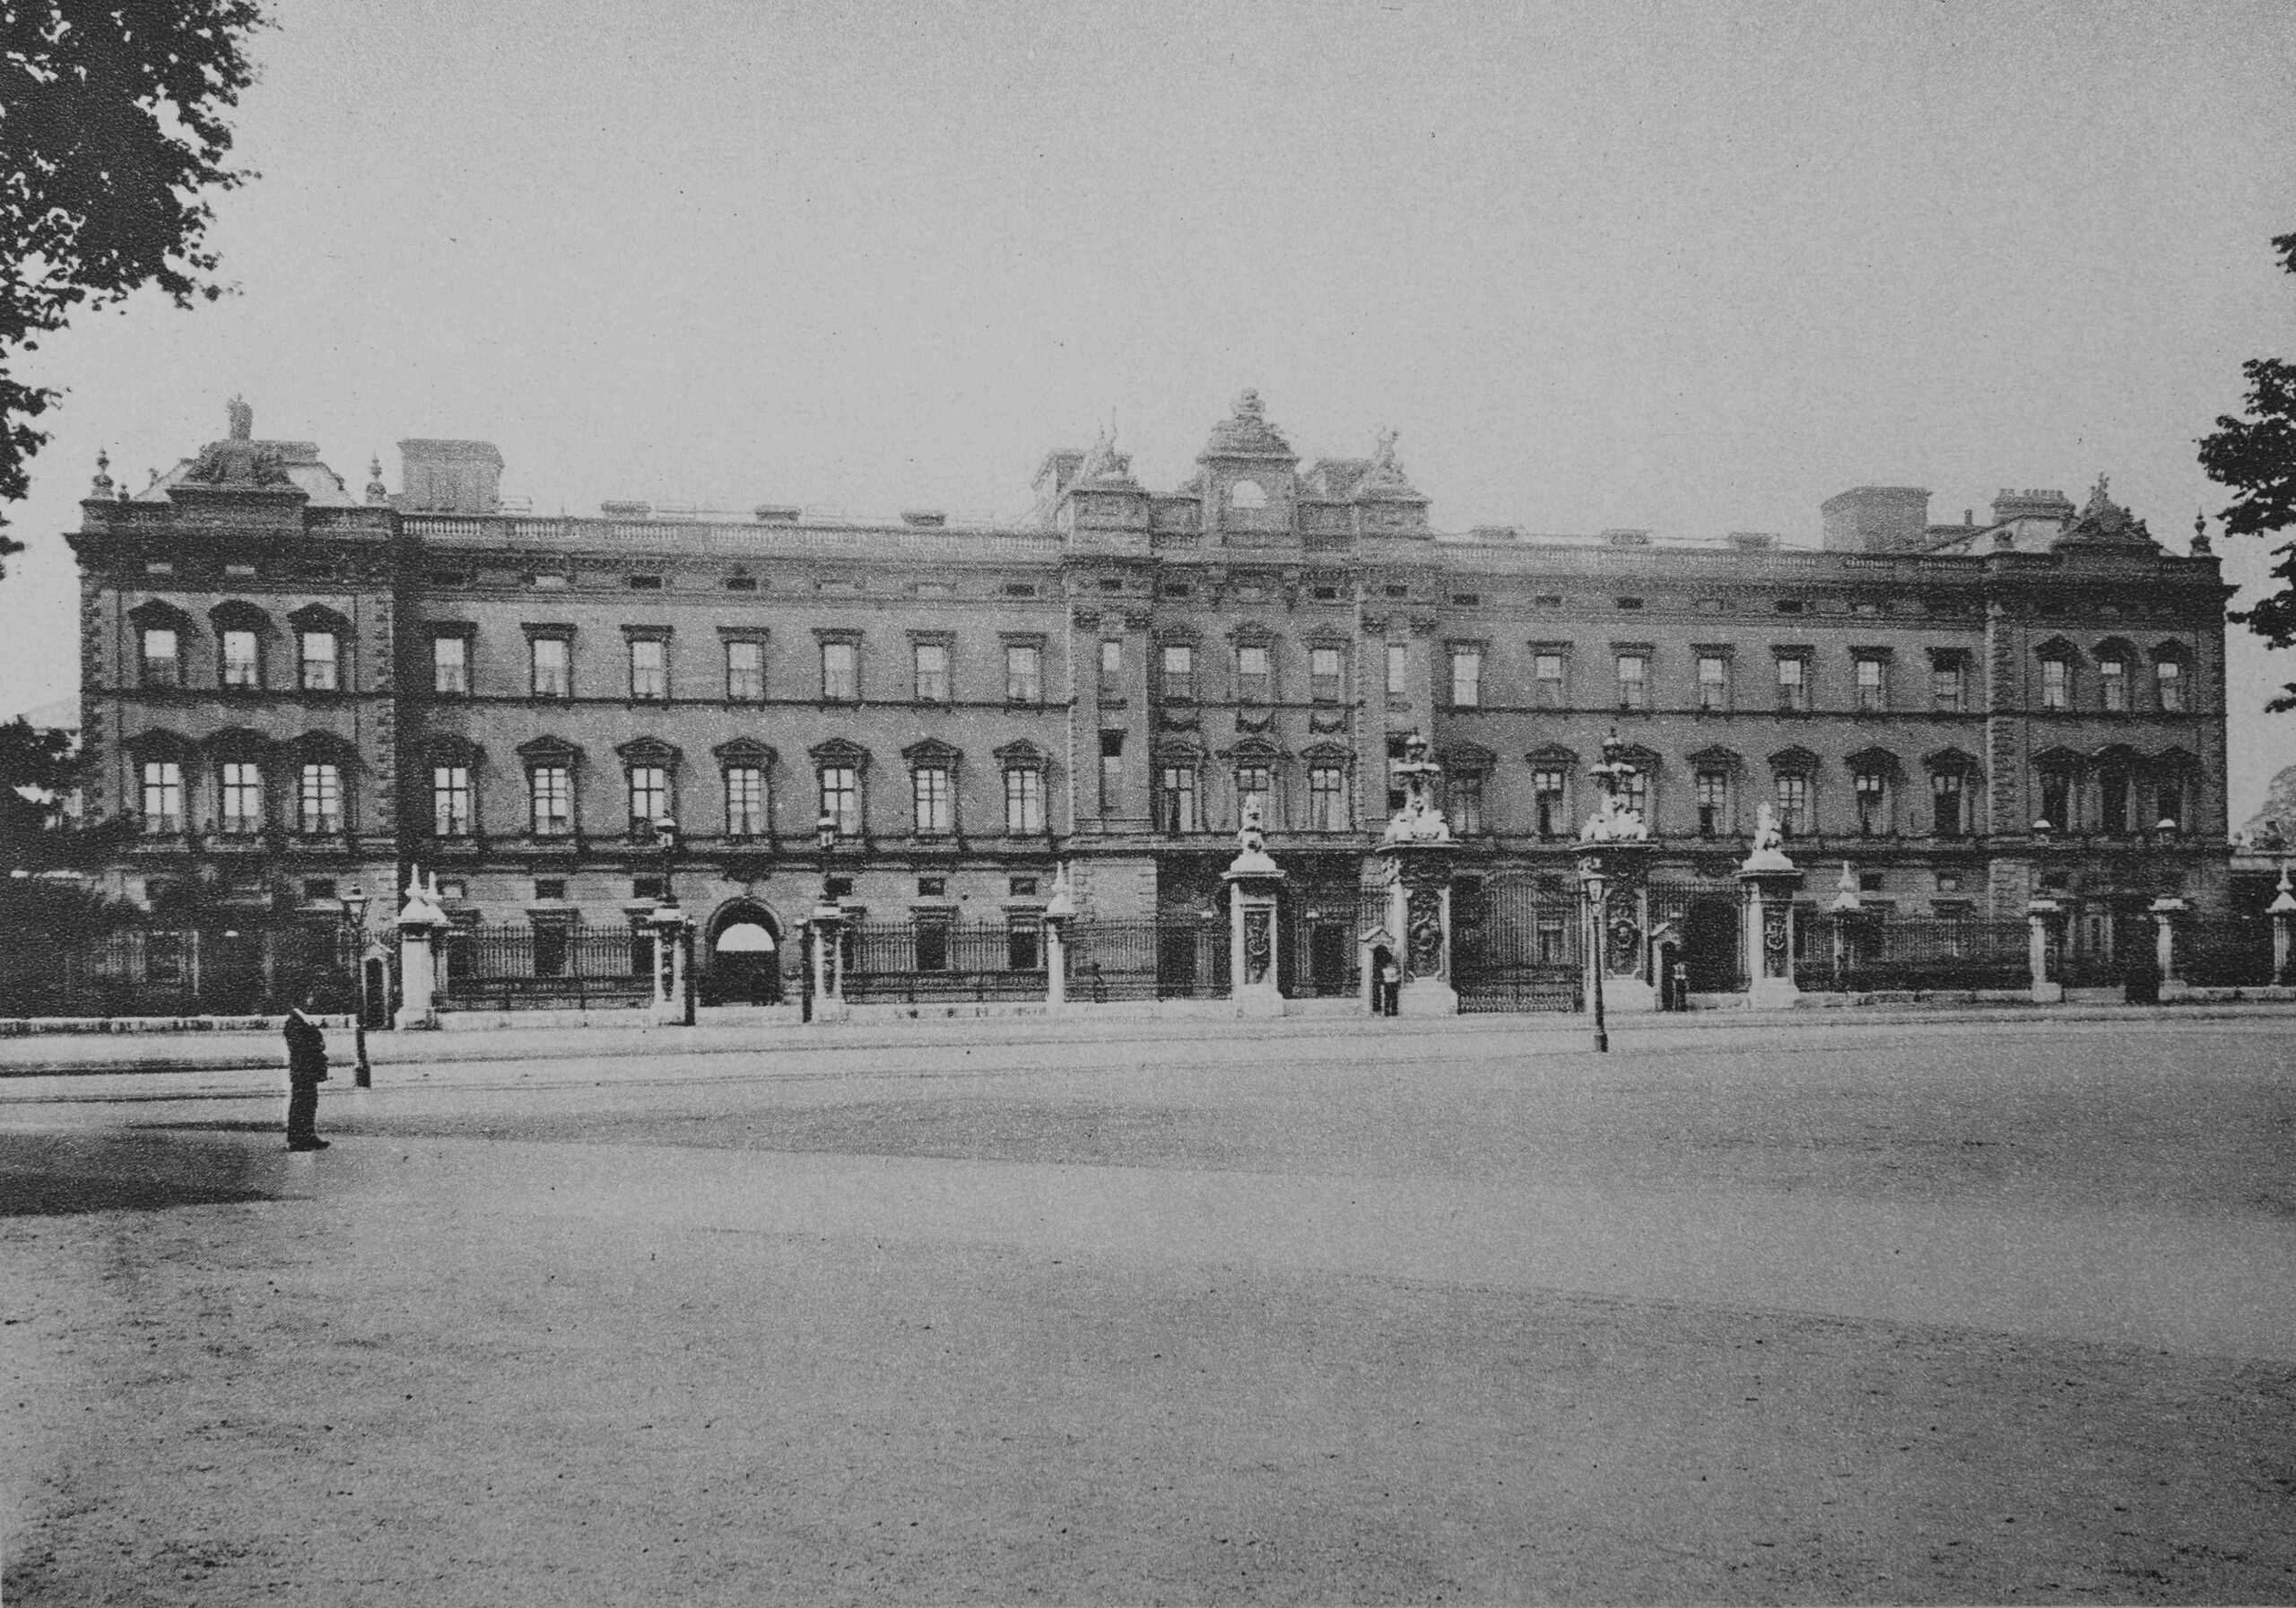 Old Buckingham Palace